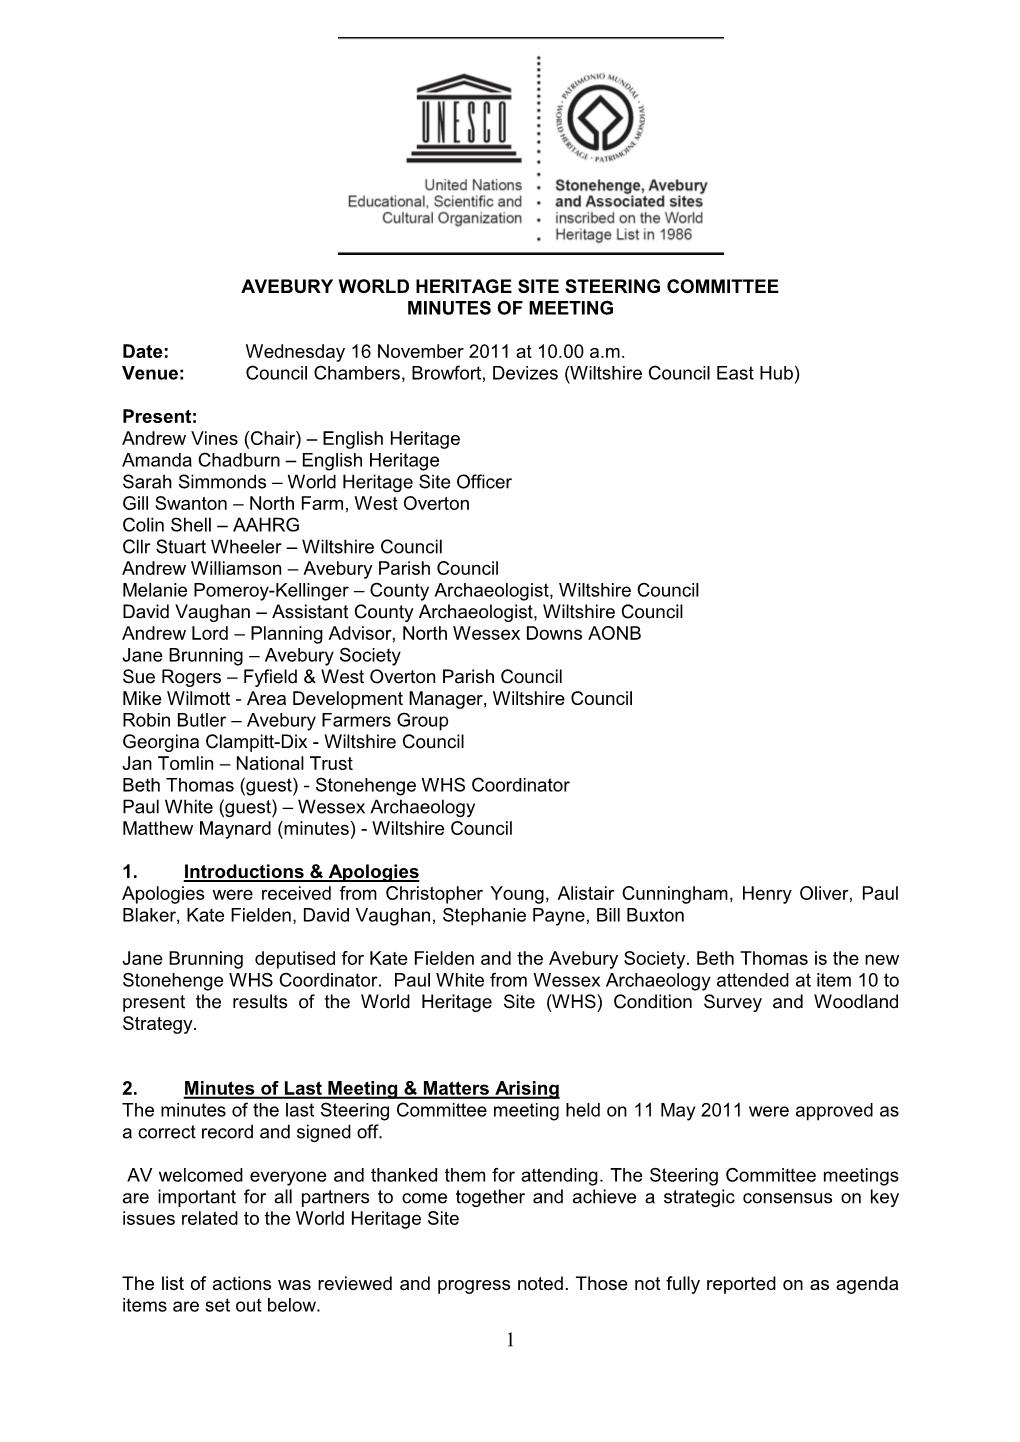 Avebury World Heritage Site Steering Committee Minutes of Meeting